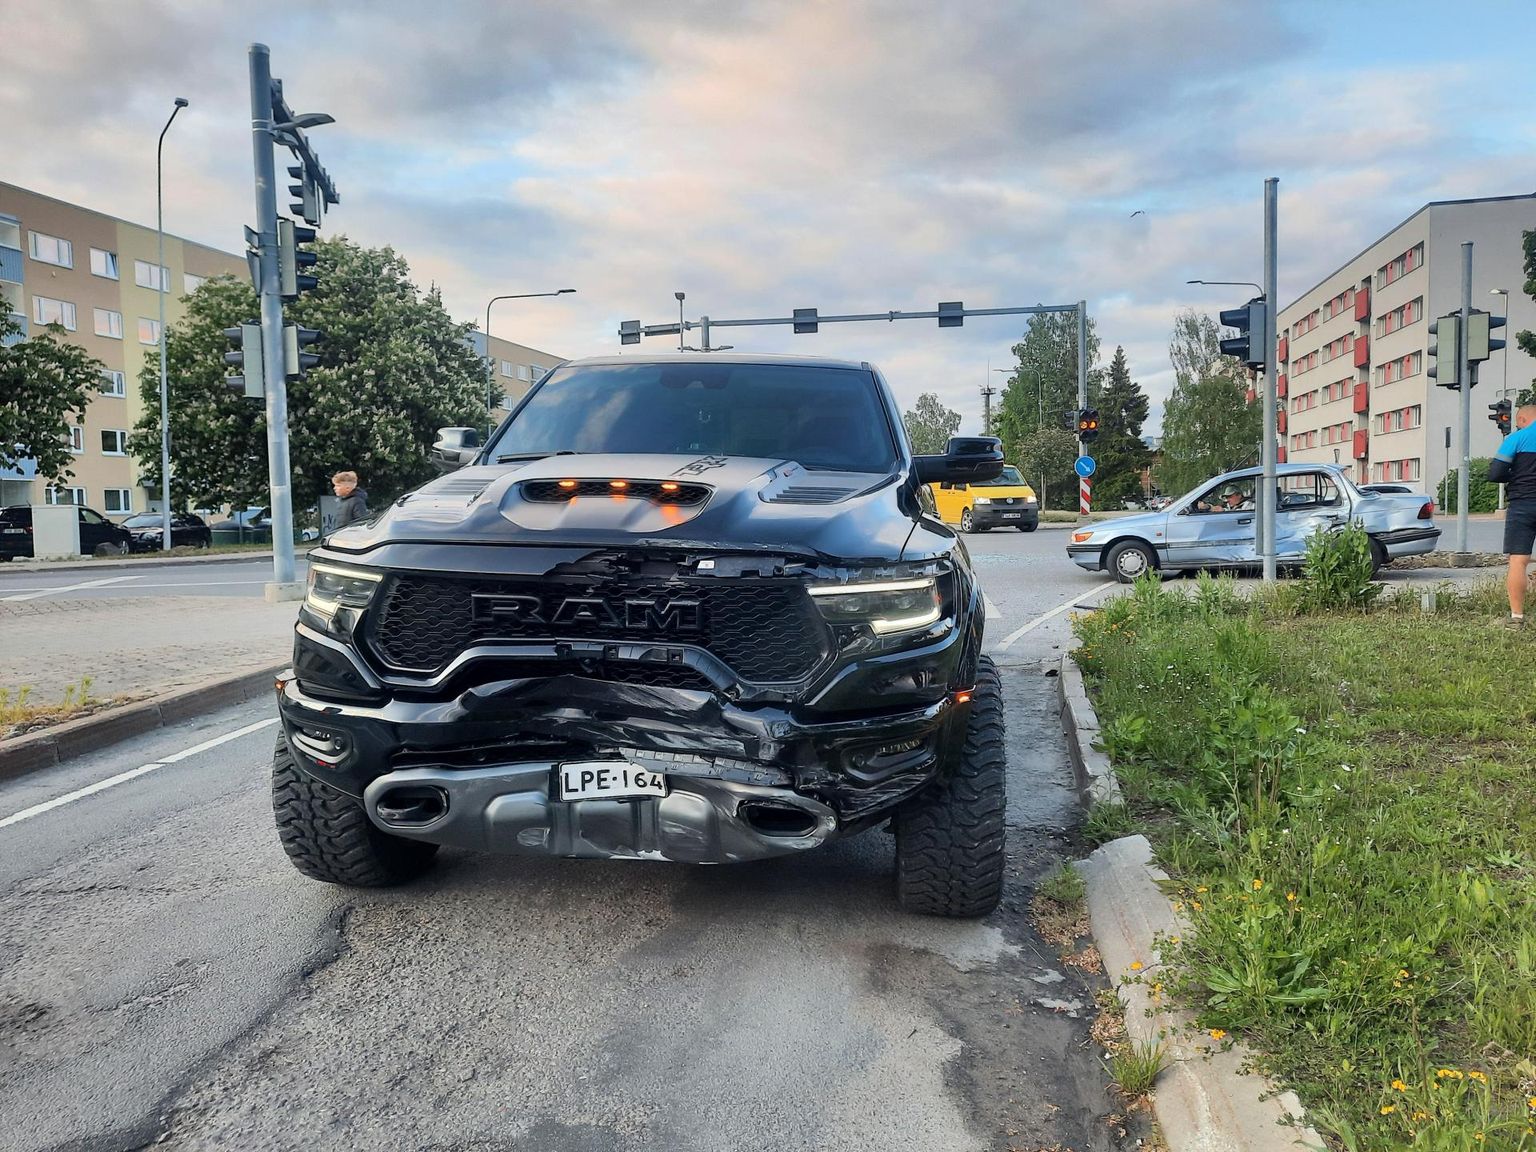 Liiklusõnnetus Tuleviku tänava ja Rägavere tee ristmikul.